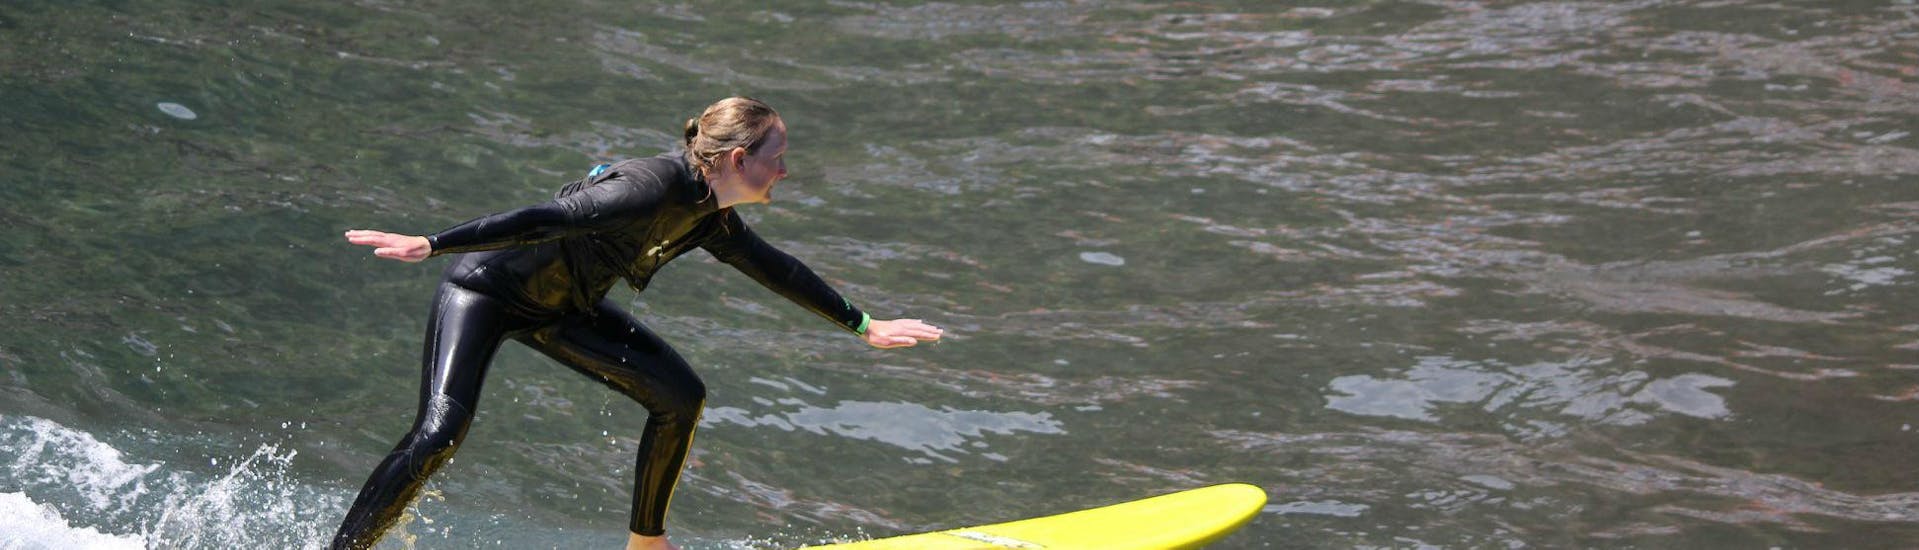 Cours privé de surf (dès 7 ans) pour Tous niveaux.